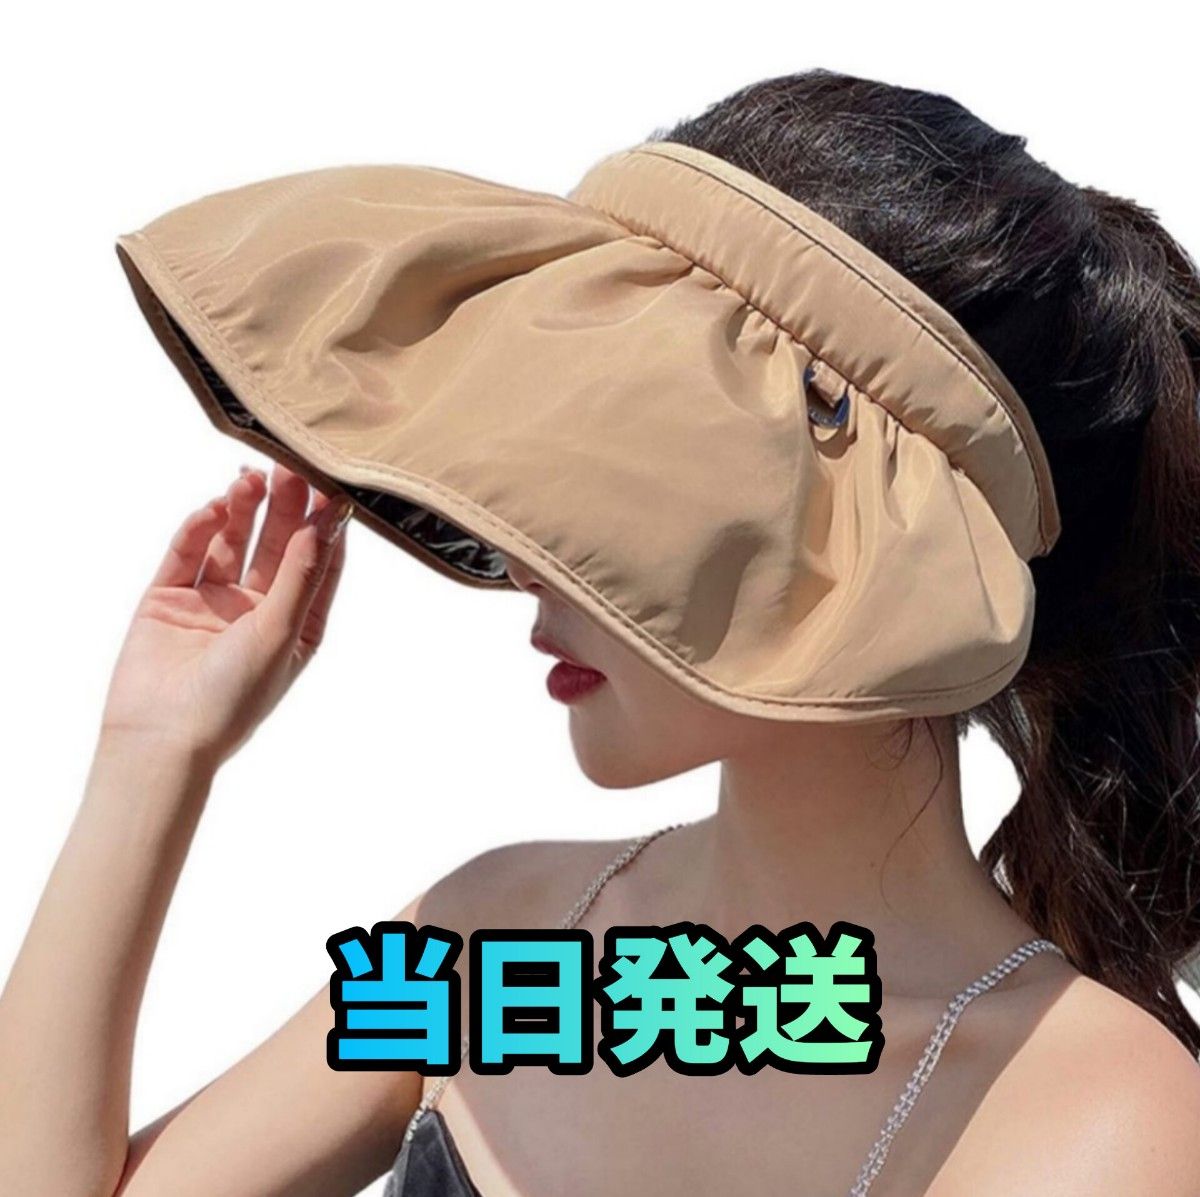 サンバイザー レディース UVカット キャップ 帽子 日焼け防止 紫外線対策 紫外線カット 小顔効果 抗菌防臭 つば広幅調節可能 